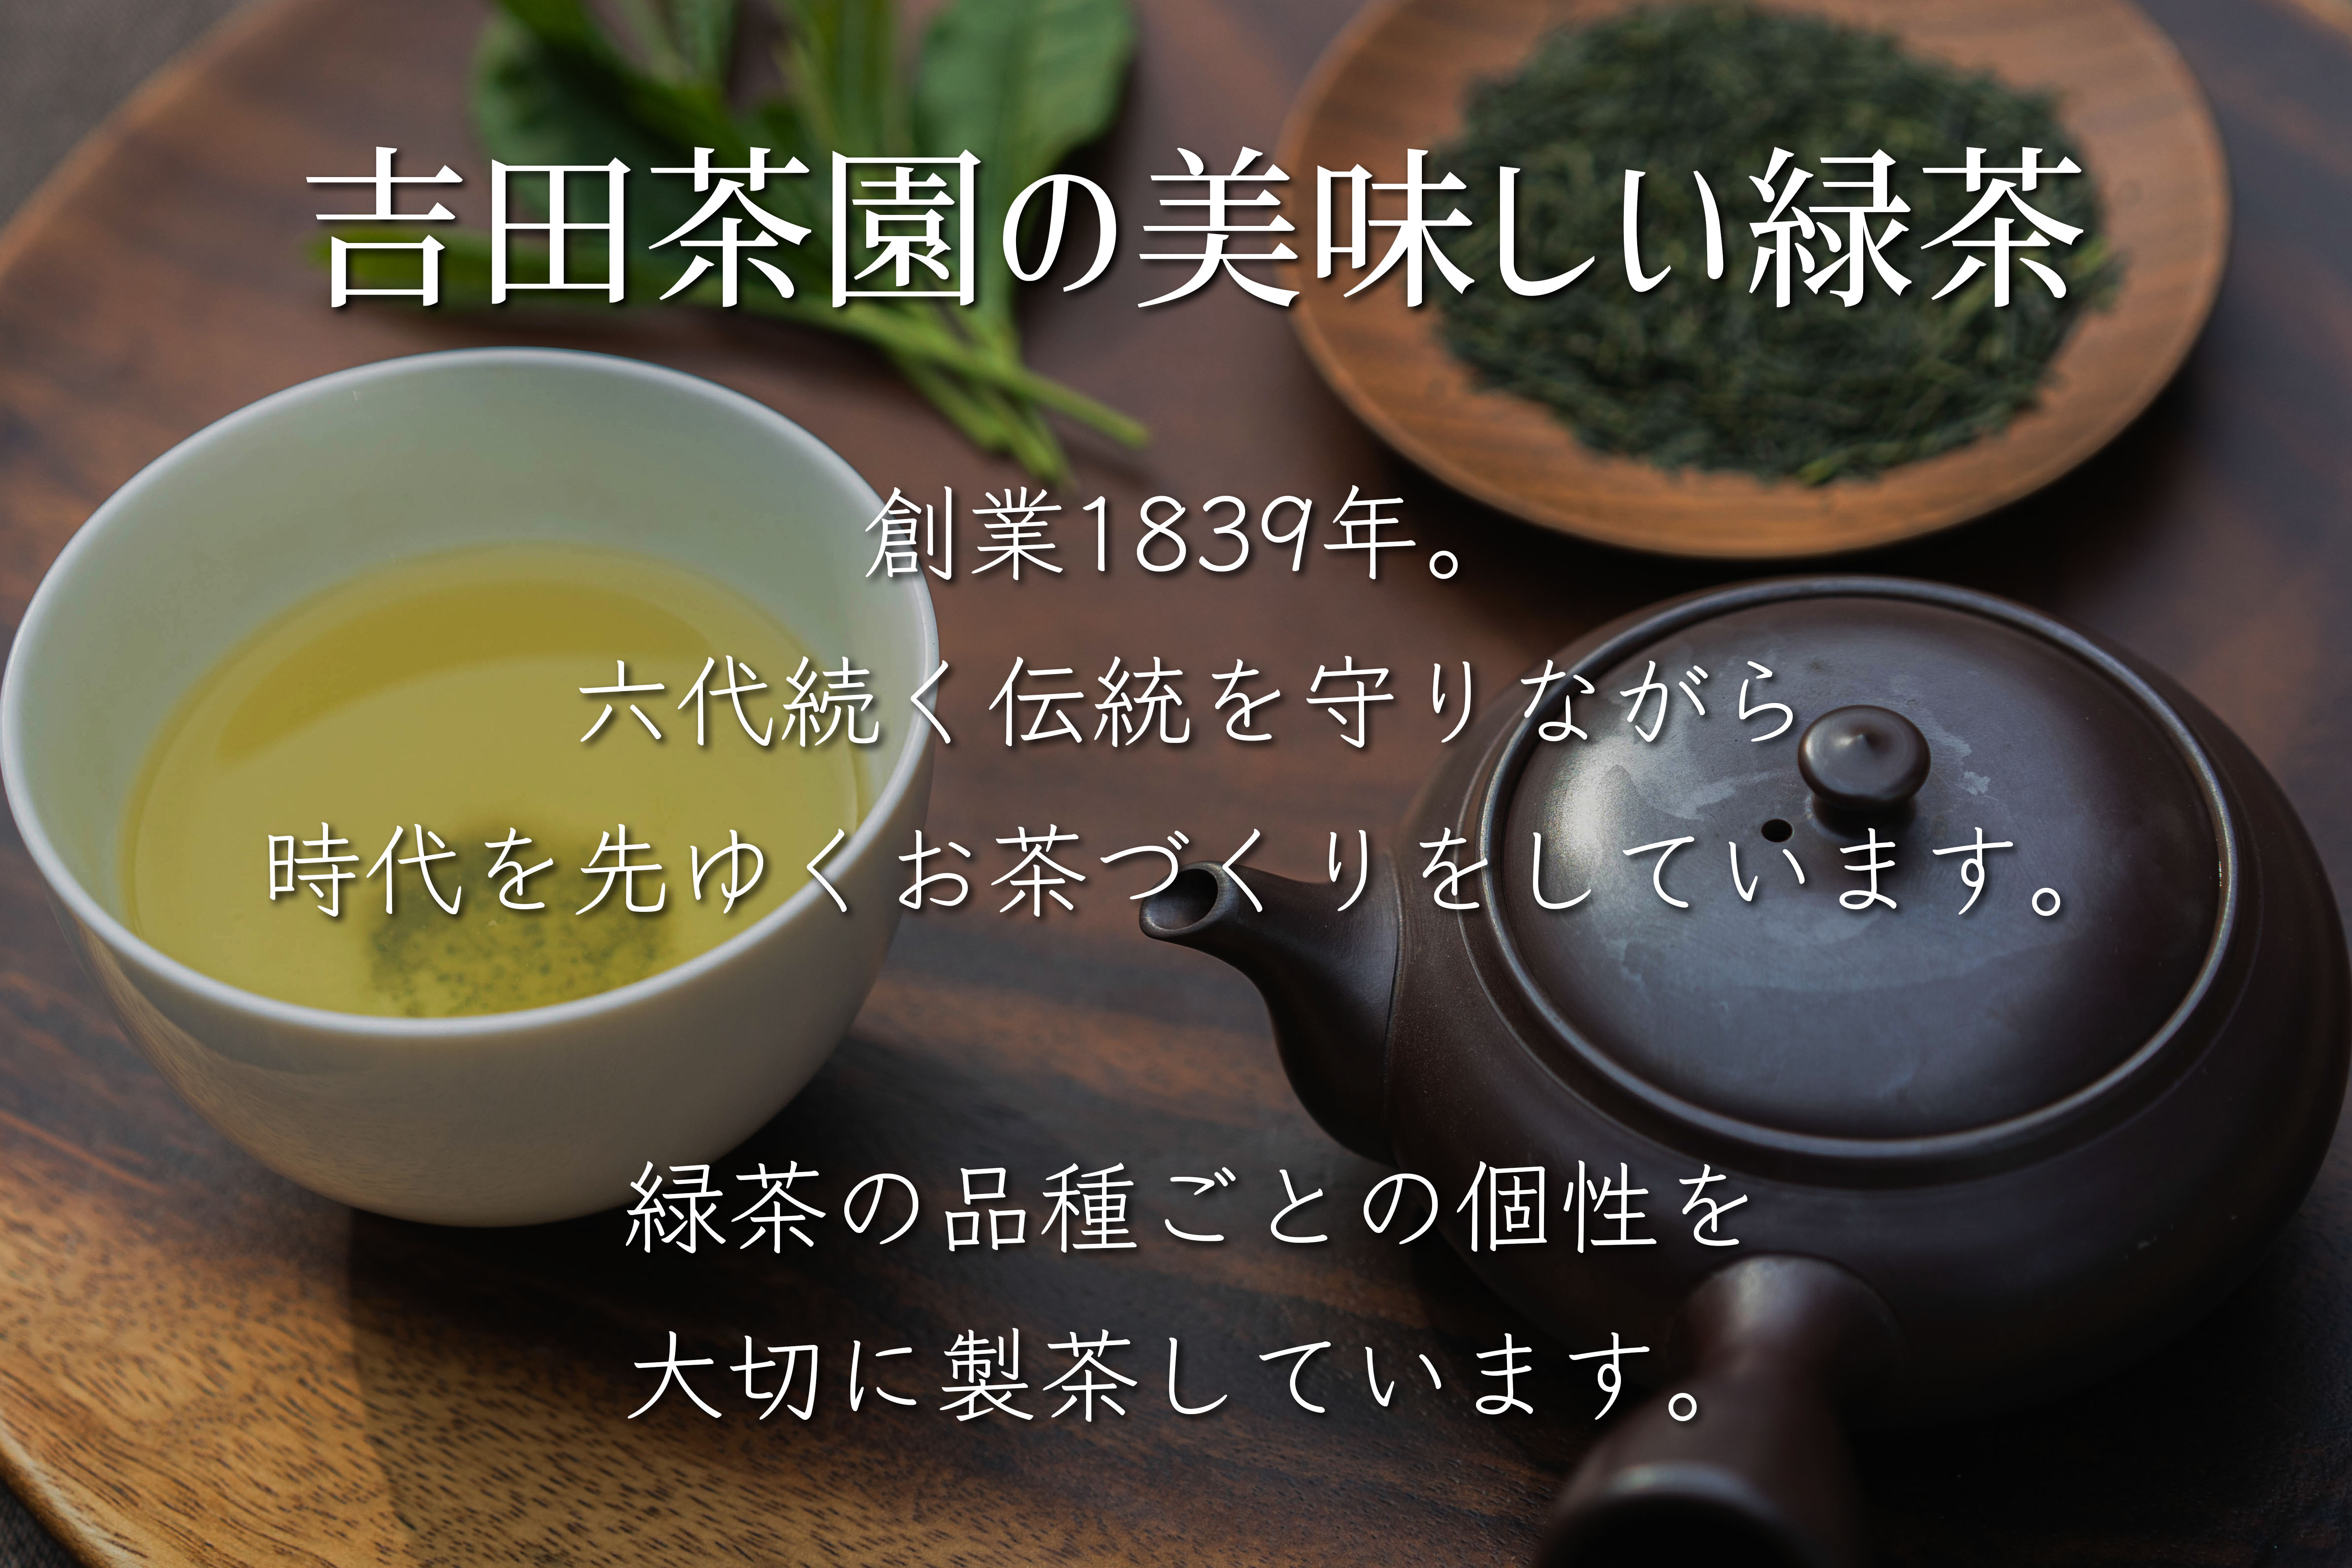 粉茶 緑茶 1kg お茶 お茶の葉 伊勢茶粉茶 日本茶 業務用 芽茶 茶葉 【超ポイントバック祭】 芽茶